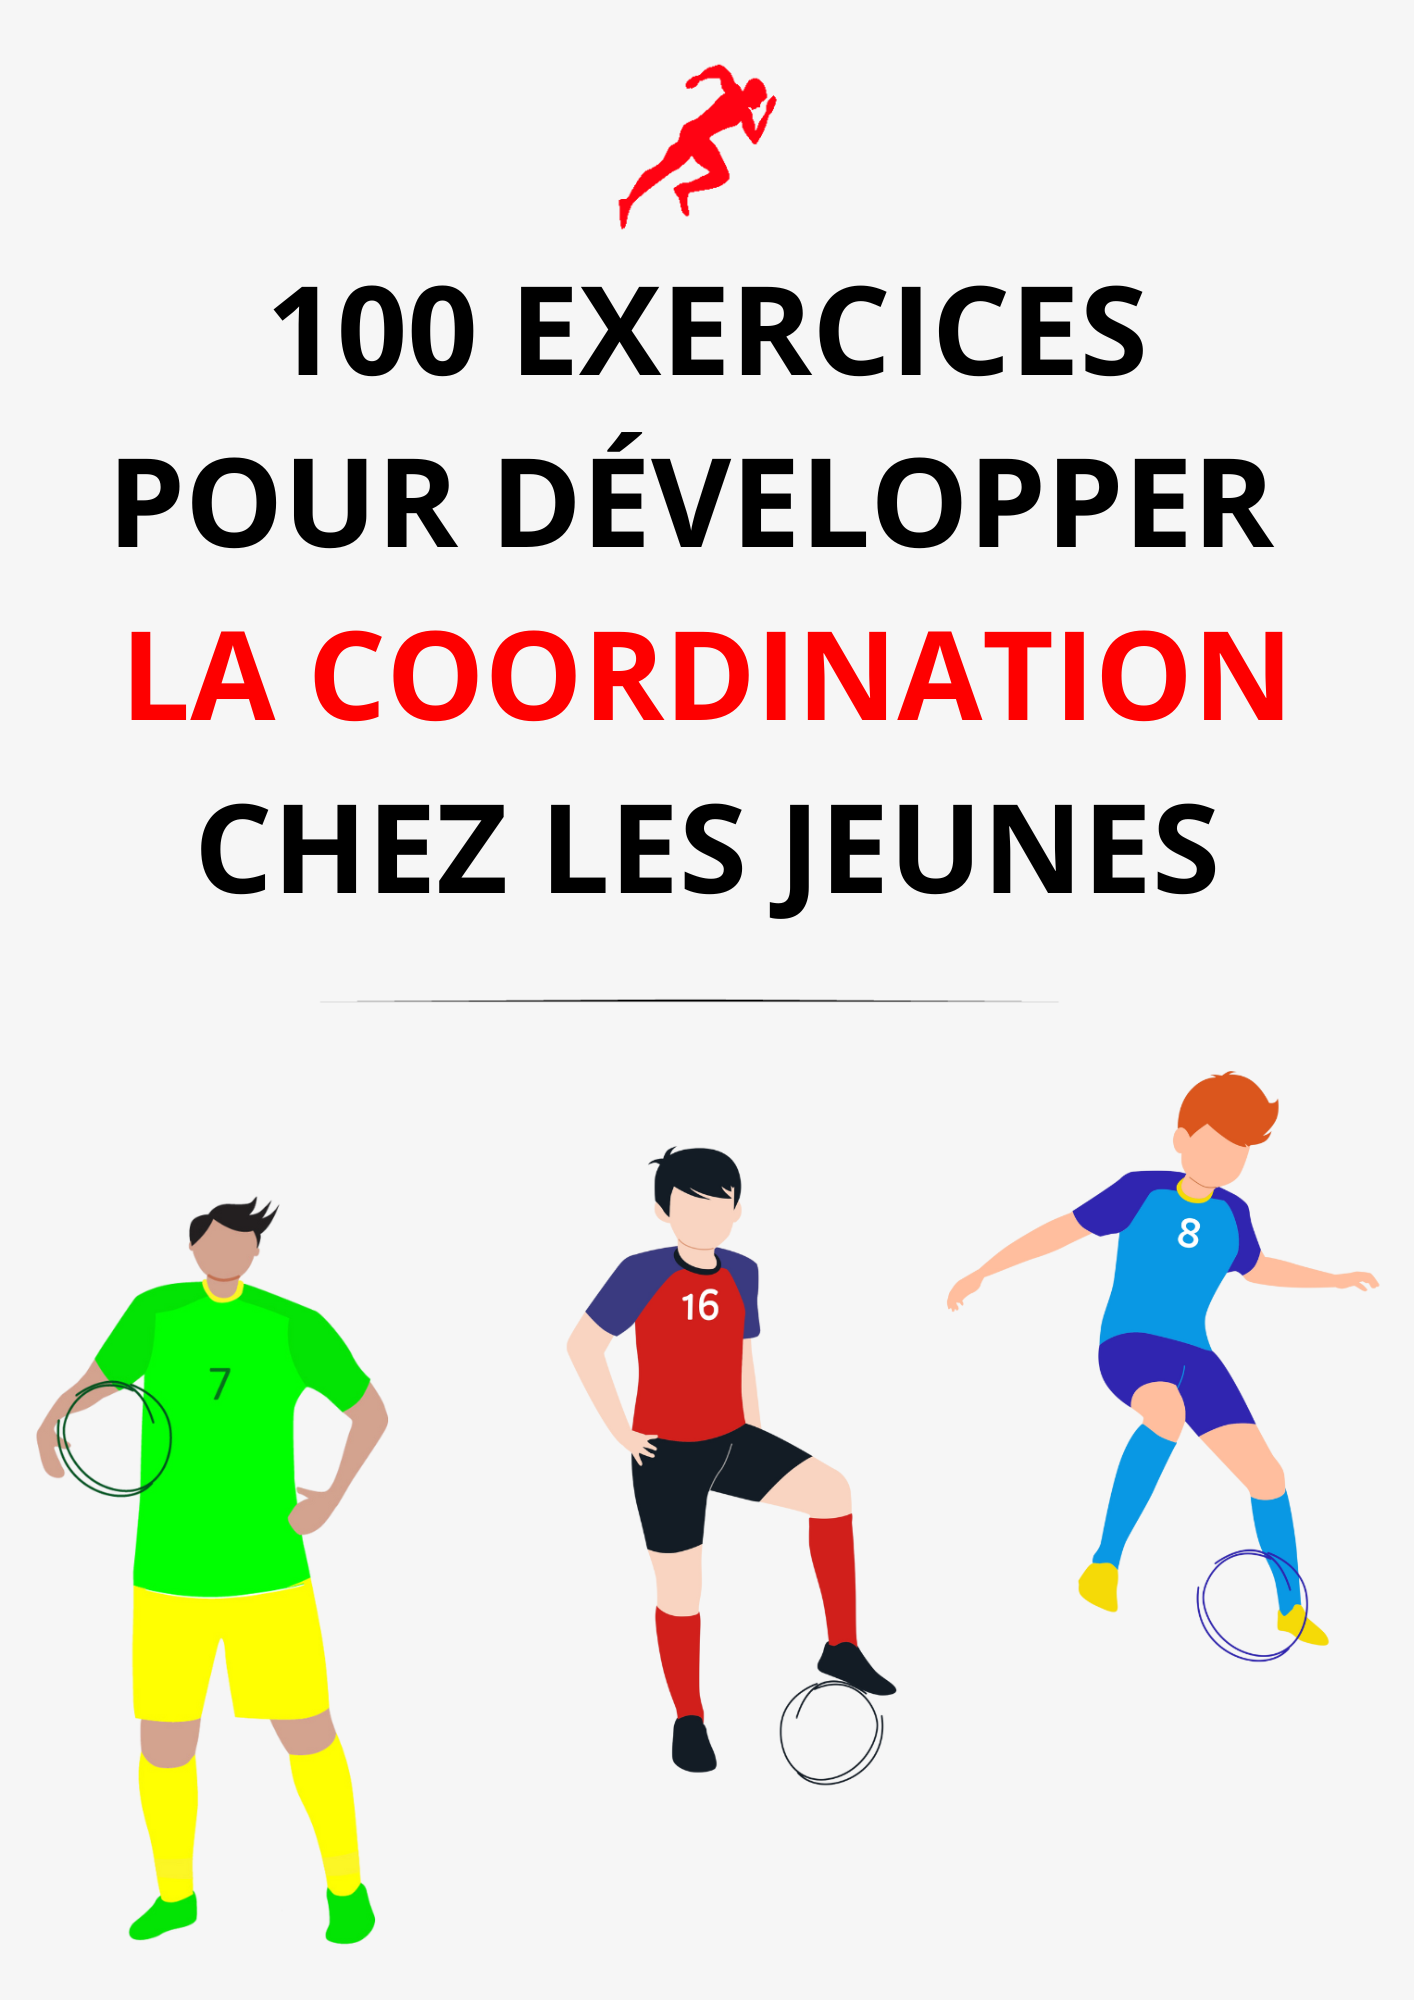 PDF 100 IDÉES D'EXERCICES POUR DÉVELOPPER LA COORDINATION CHEZ LES JEUNES FOOTBALLEURS